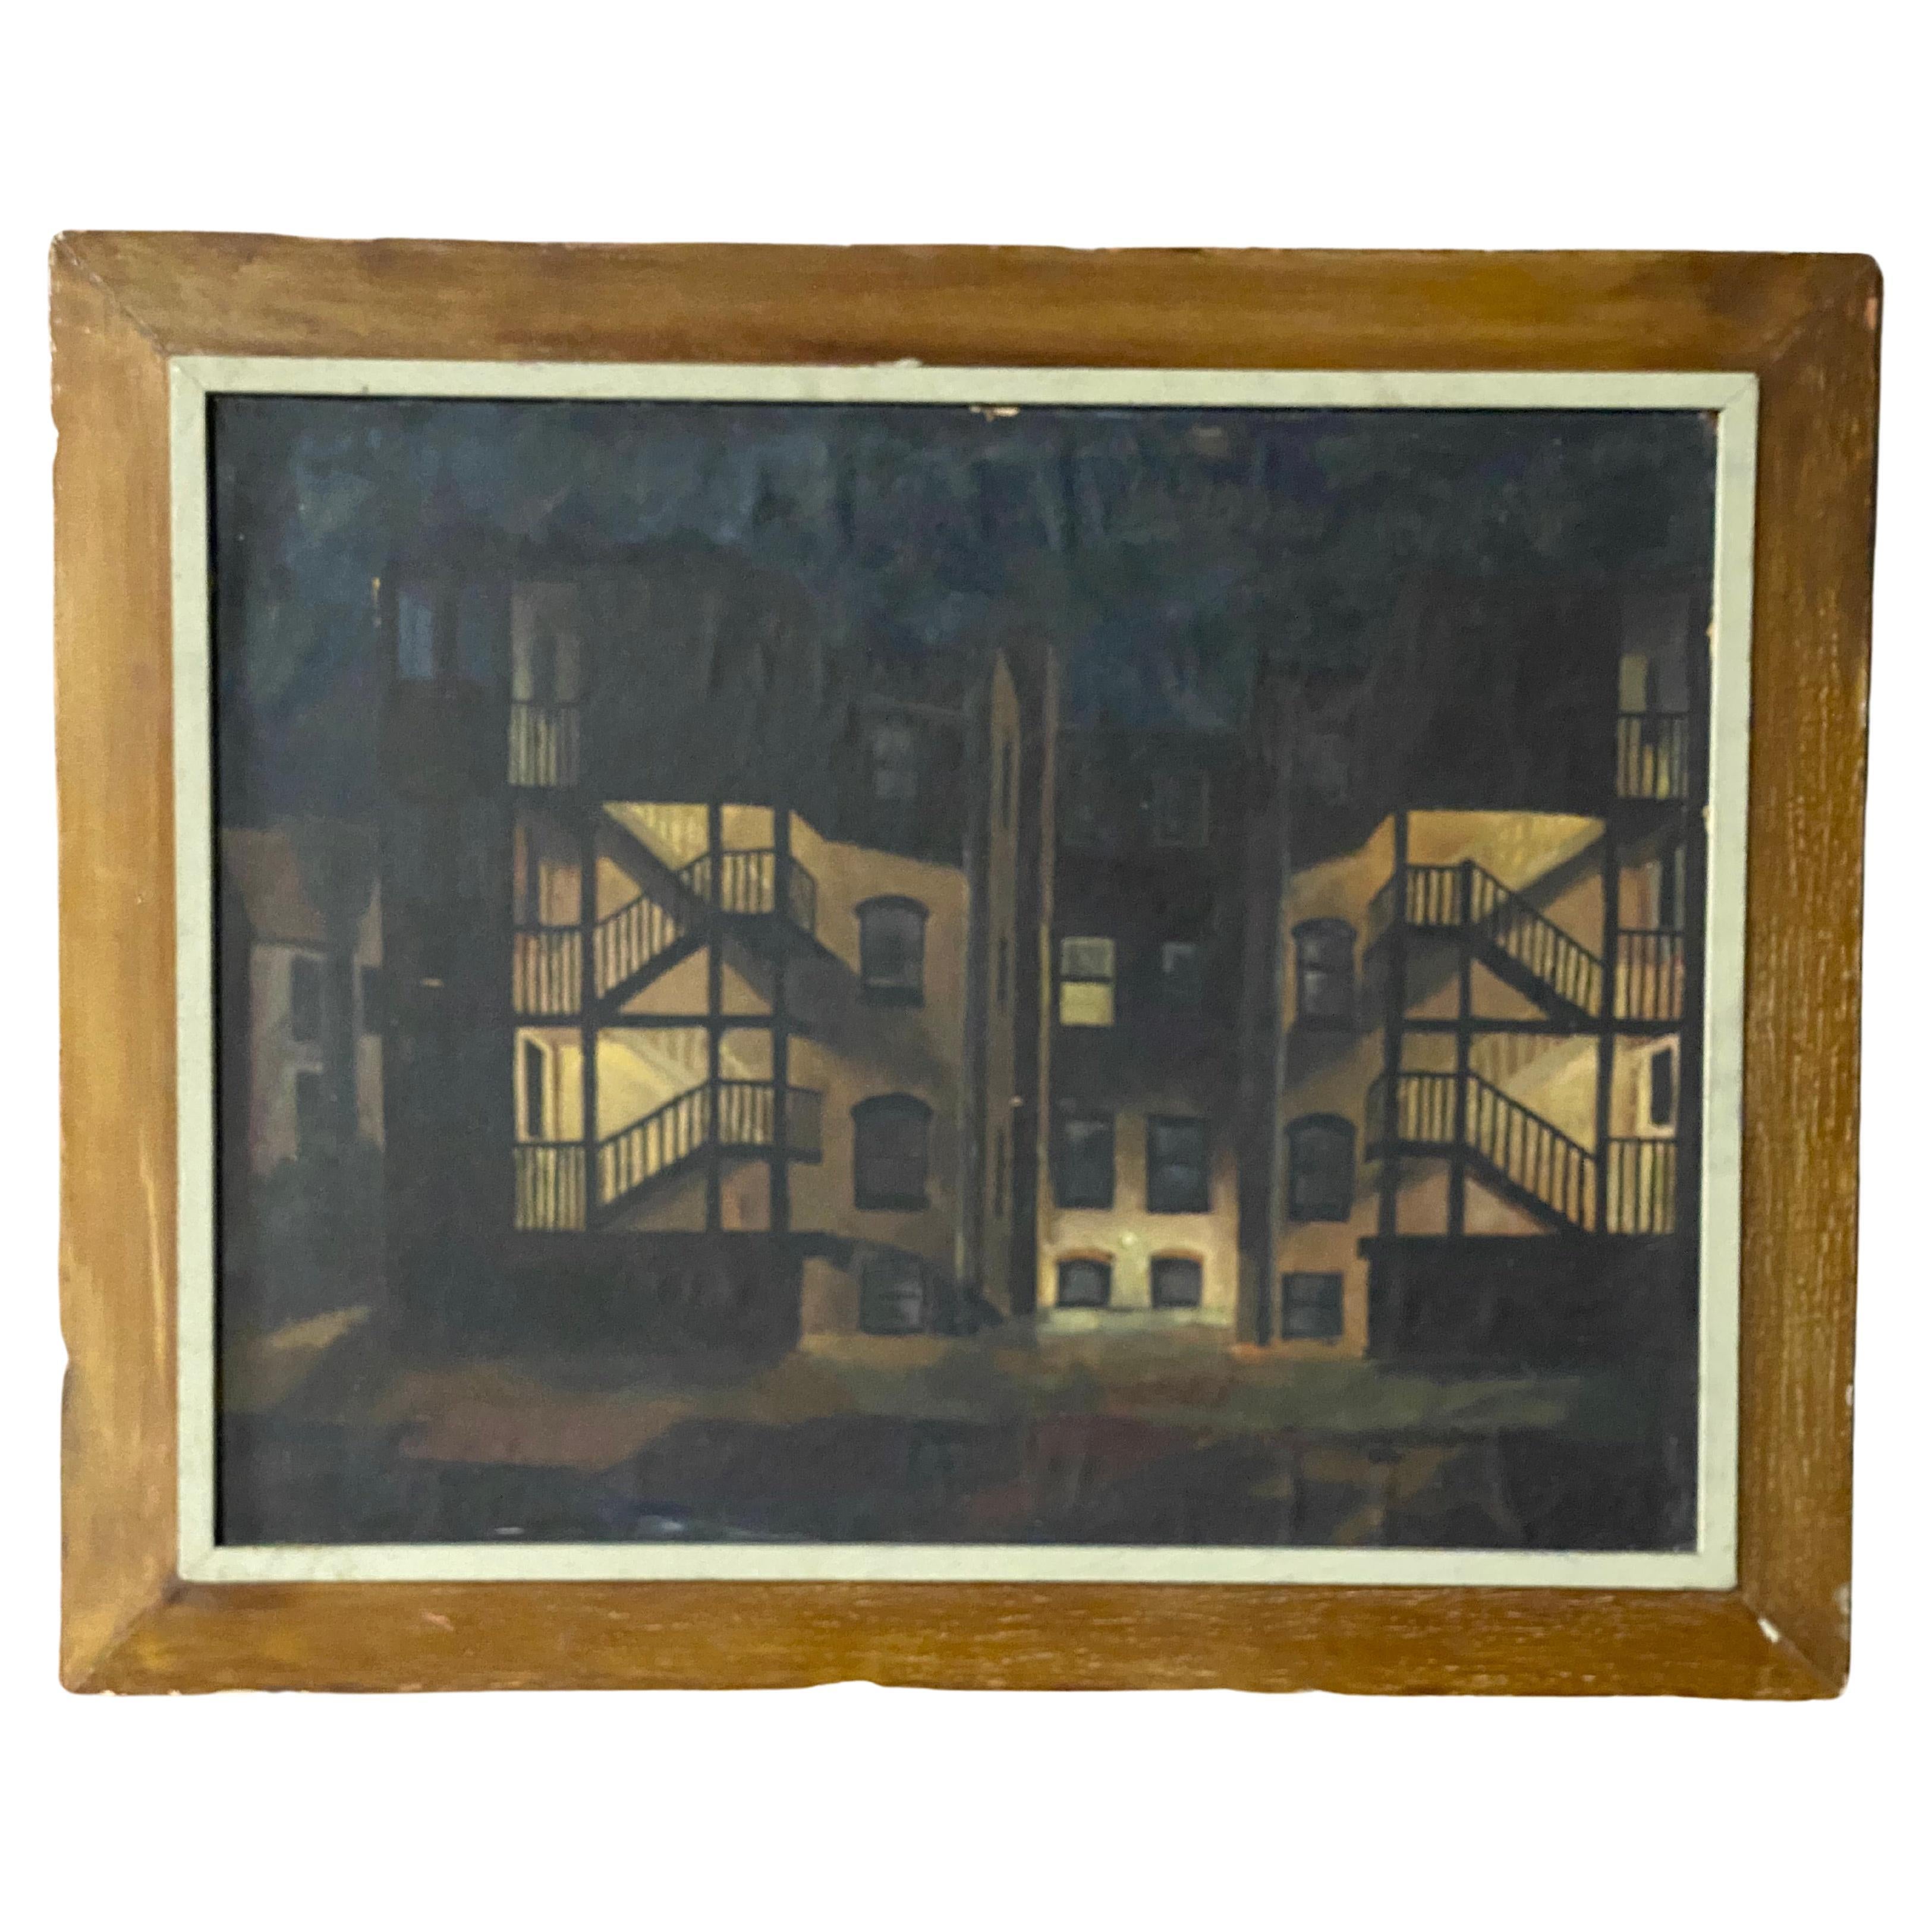 Peinture de la maison Tenement Row des années 1950 par Leonard Buzz Wallace